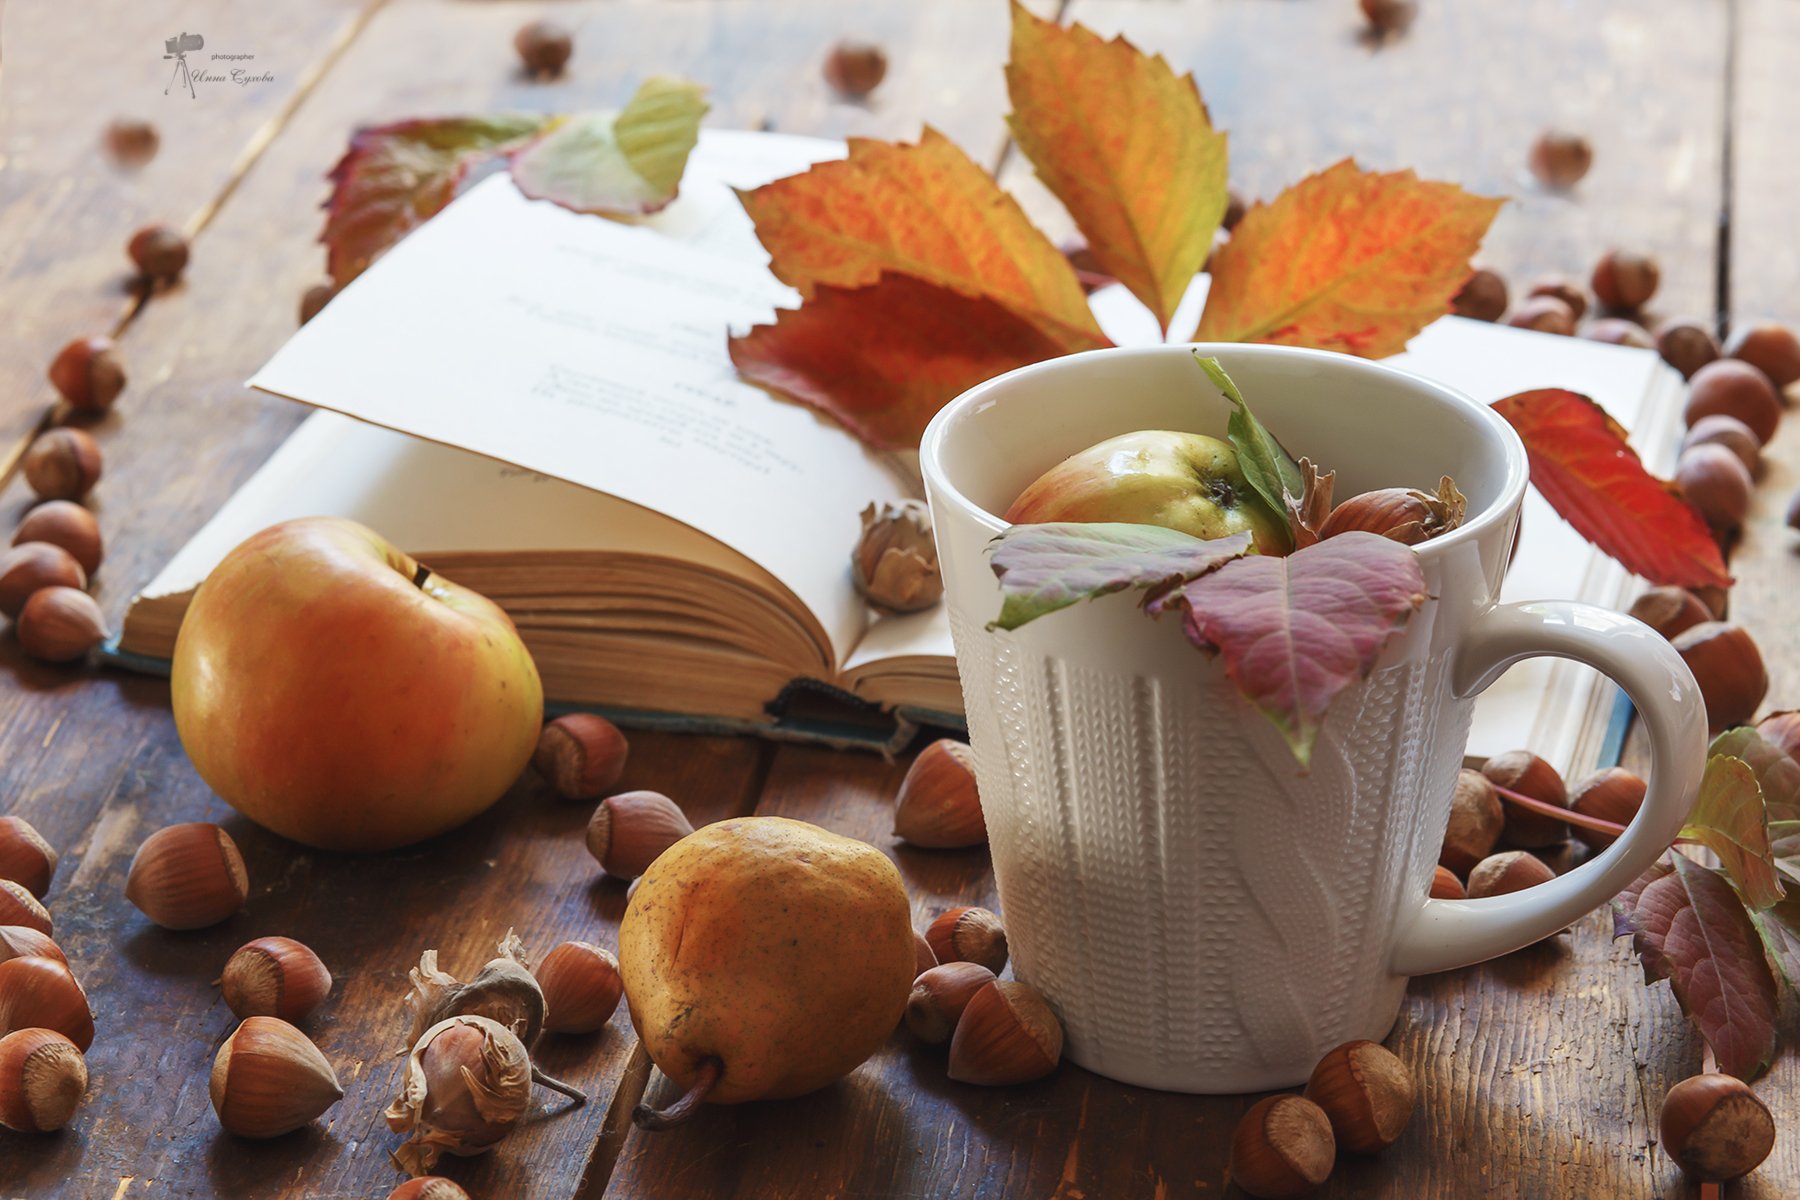 осень,фрукты,листья,орехи,книга,чашка,натюрморт,яблоки,груши, Инна Сухова